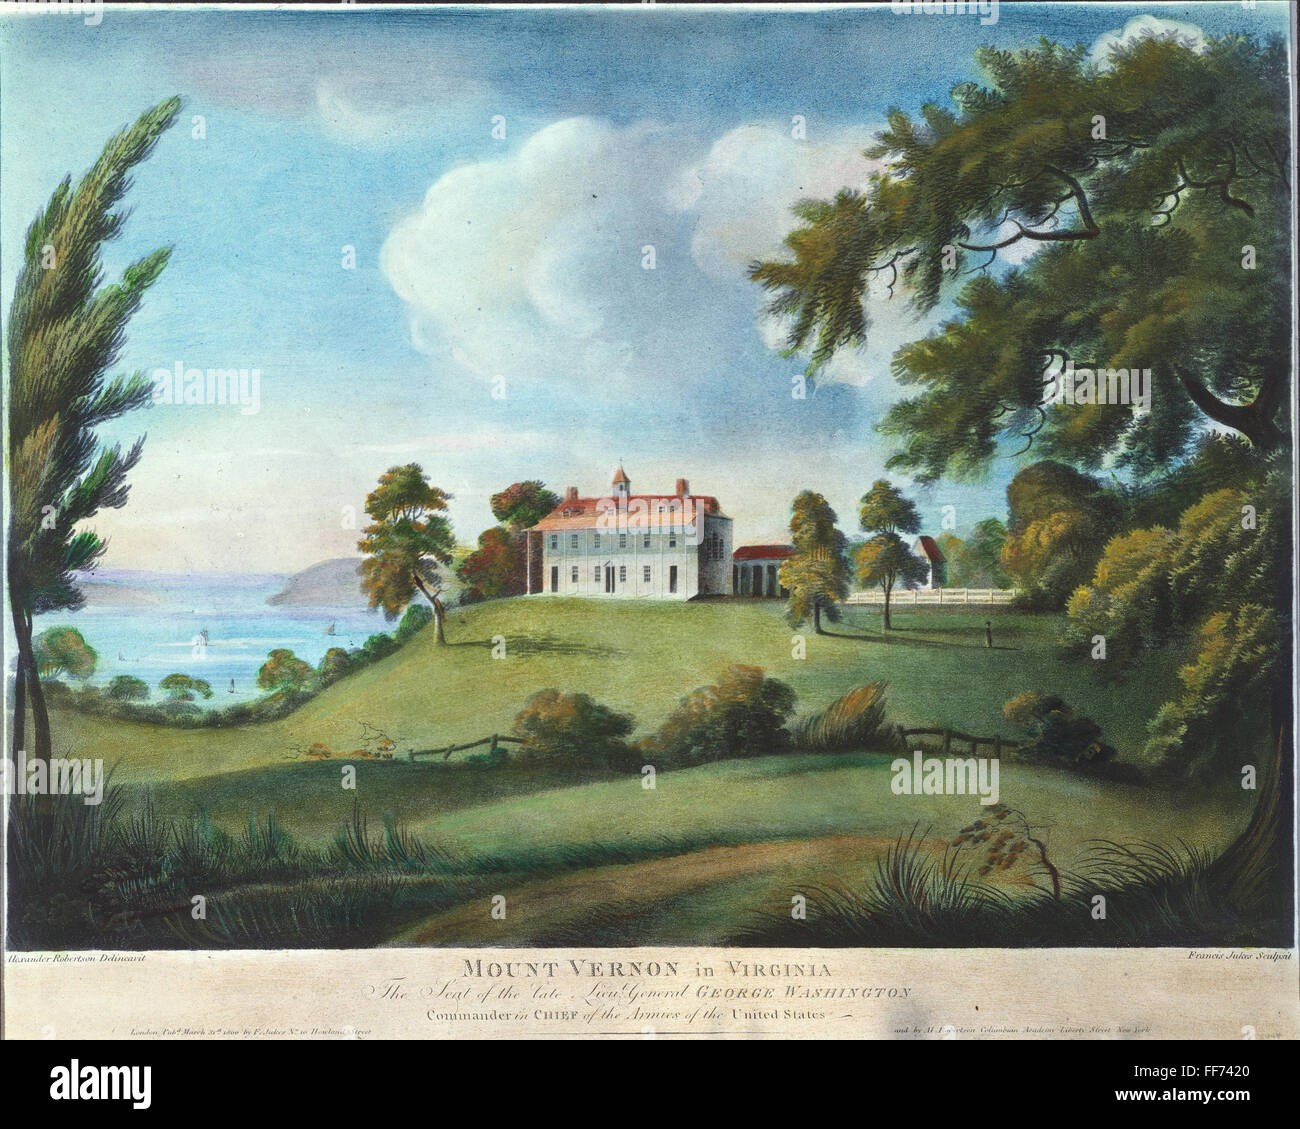 MOUNT VERNON, 1800. /NMount Vernon, la maison de George Washington sur la rivière Potomac en Virginie. L'aquatinte, 1800, par Francis Jukes après Alexander Robertson. Banque D'Images